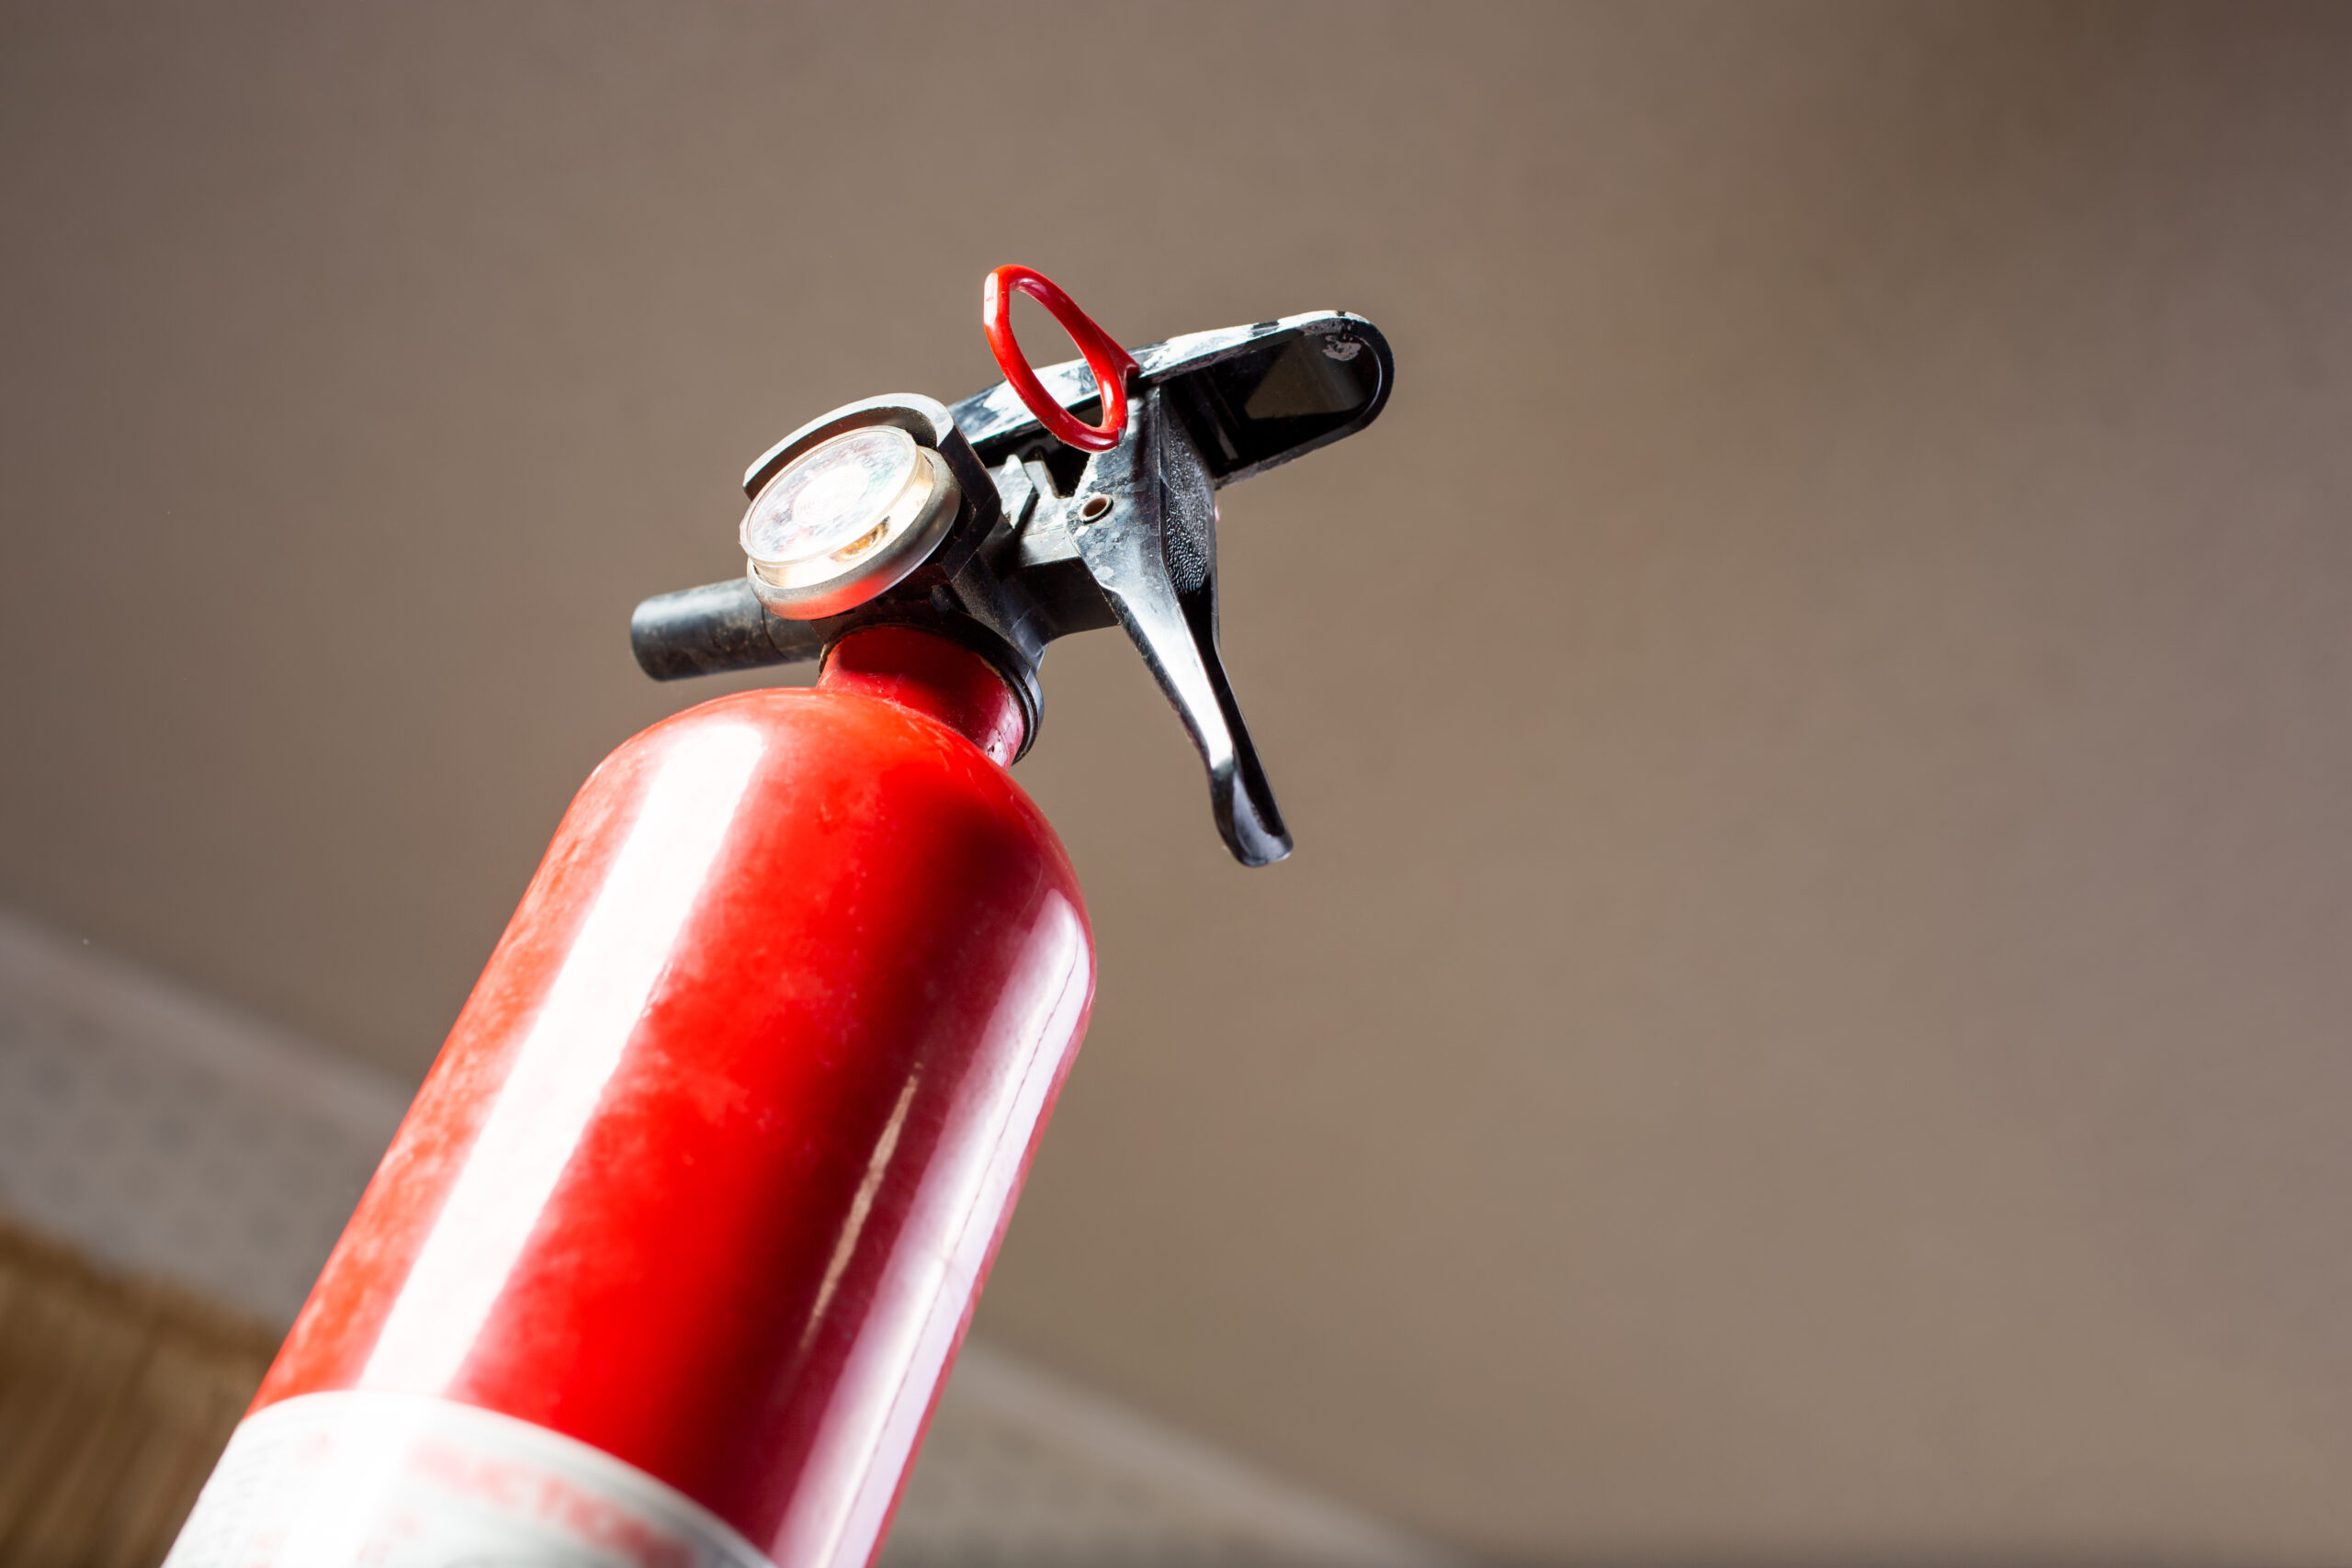 Feuerlöscher für Zuhause – Welcher ist der richtige?